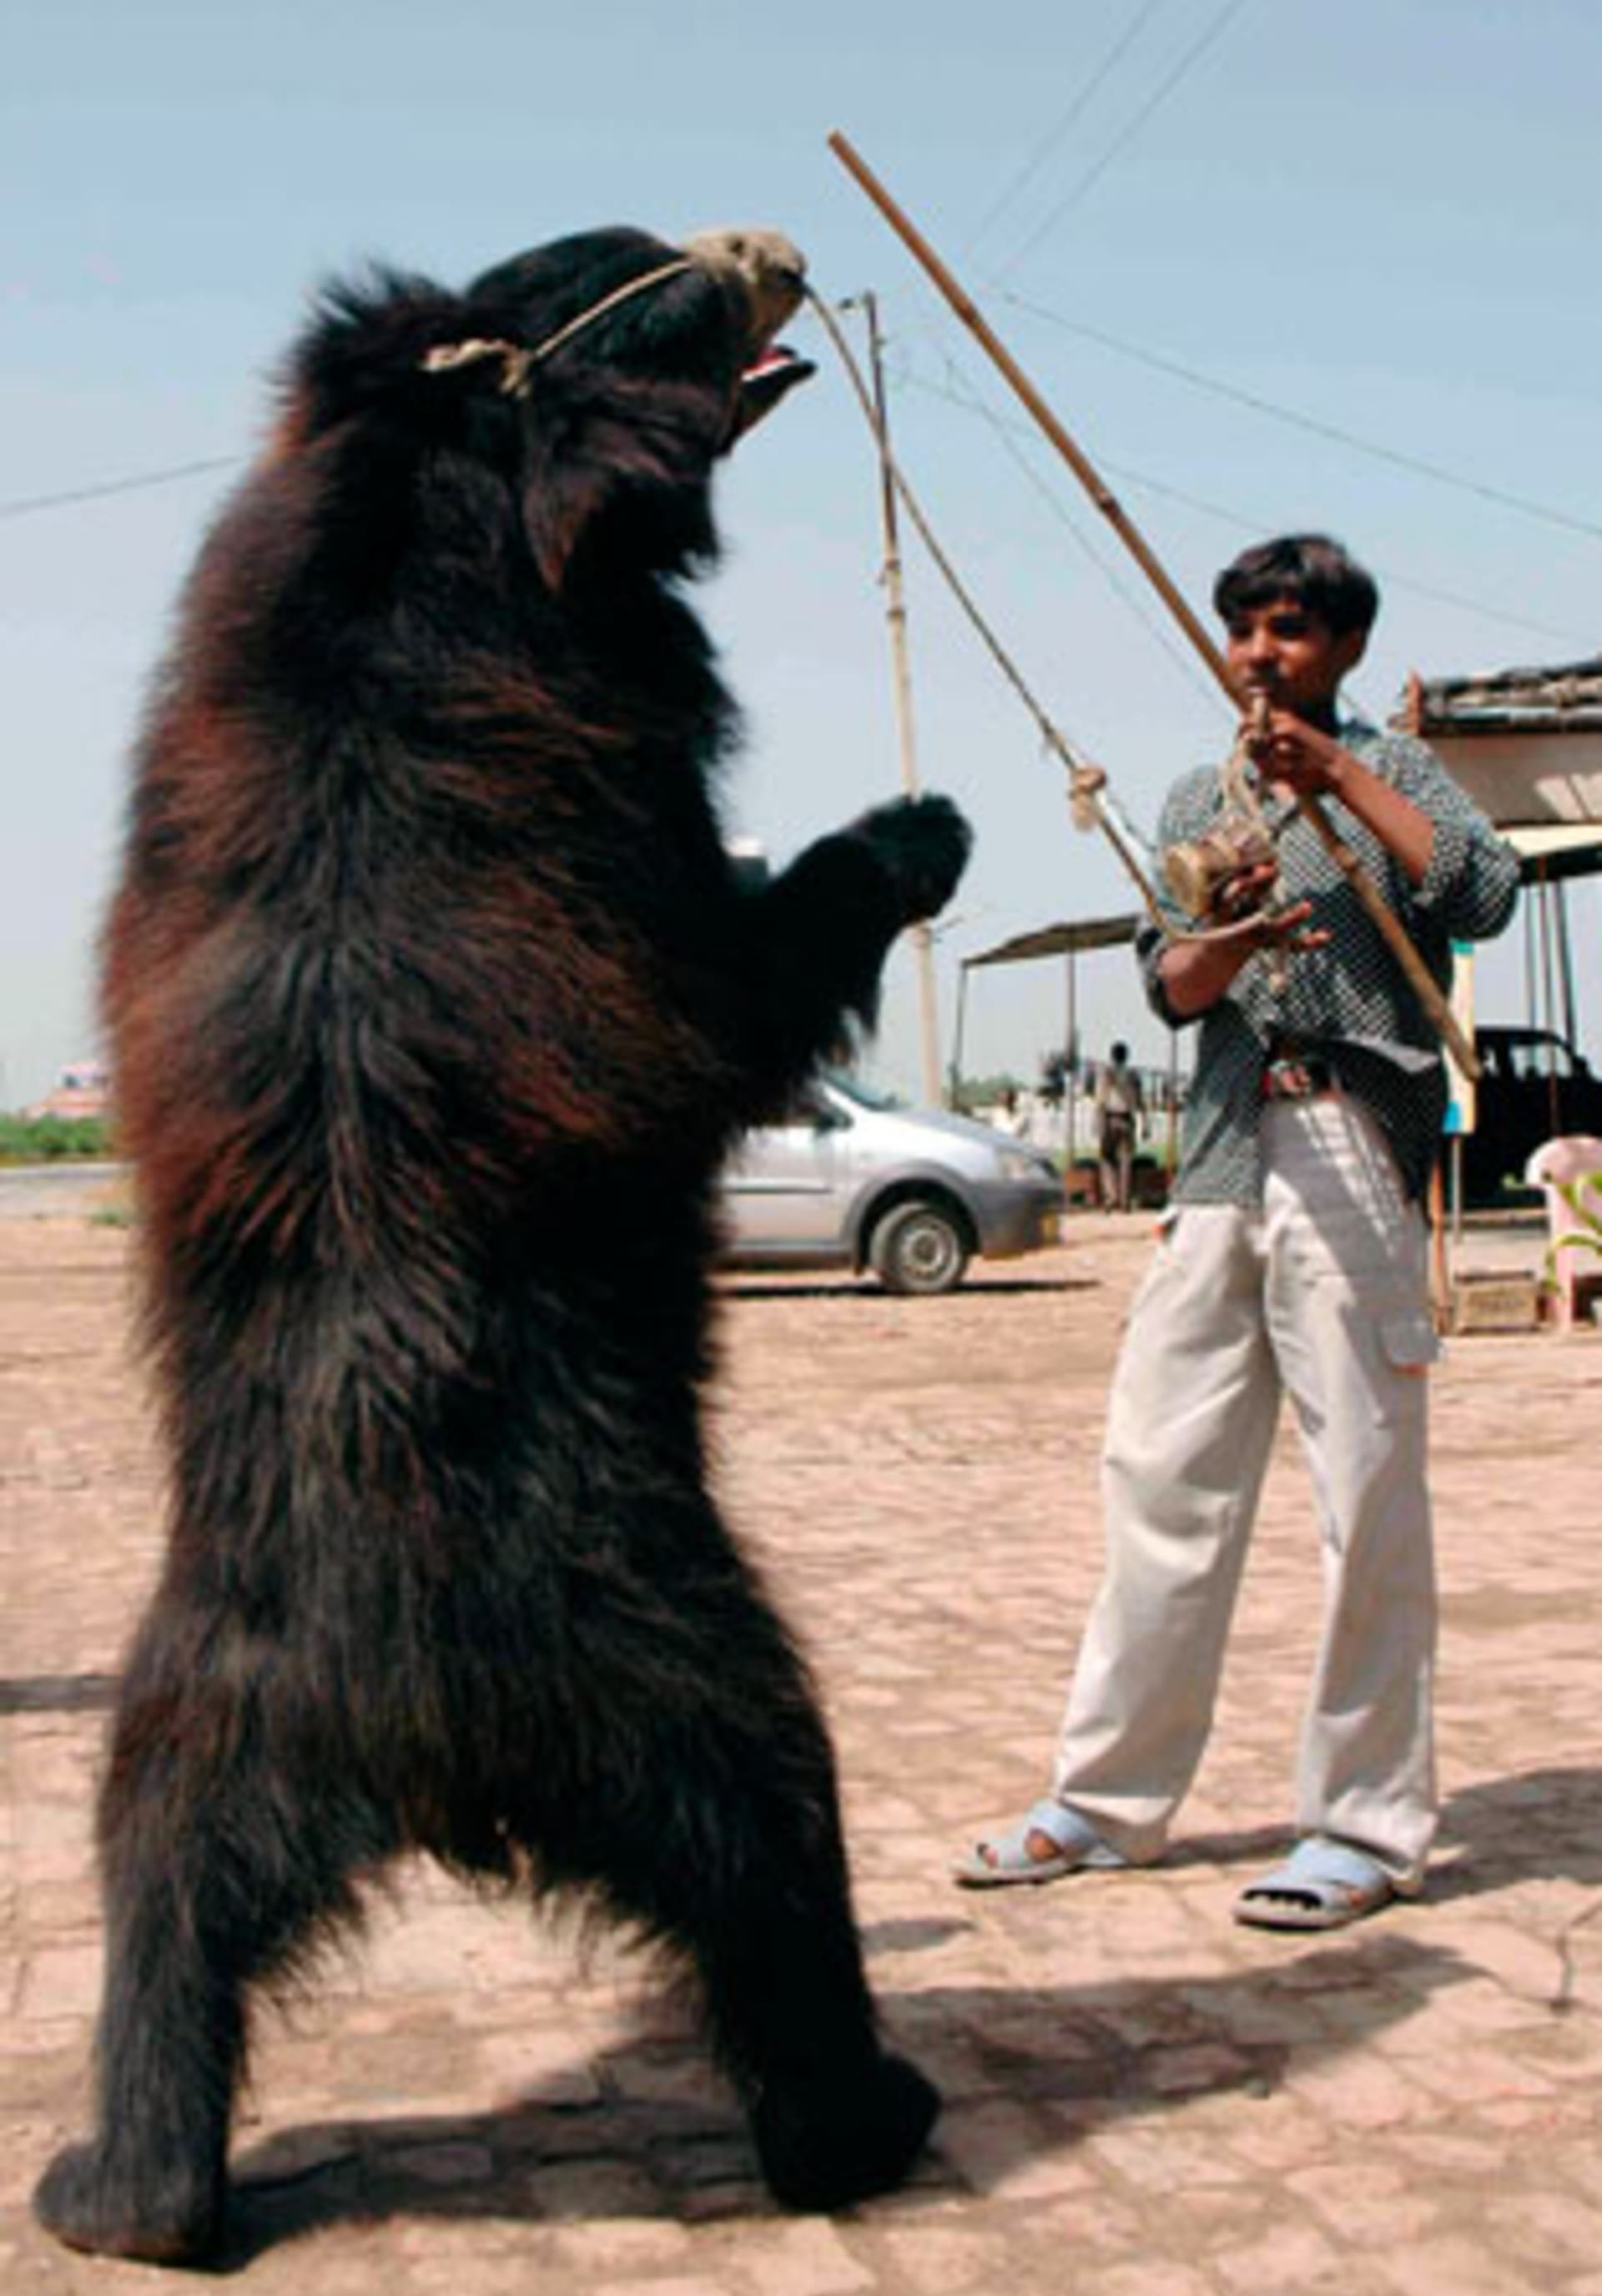 „Tančící medvěd“ zažívali velmi kruté praktiky